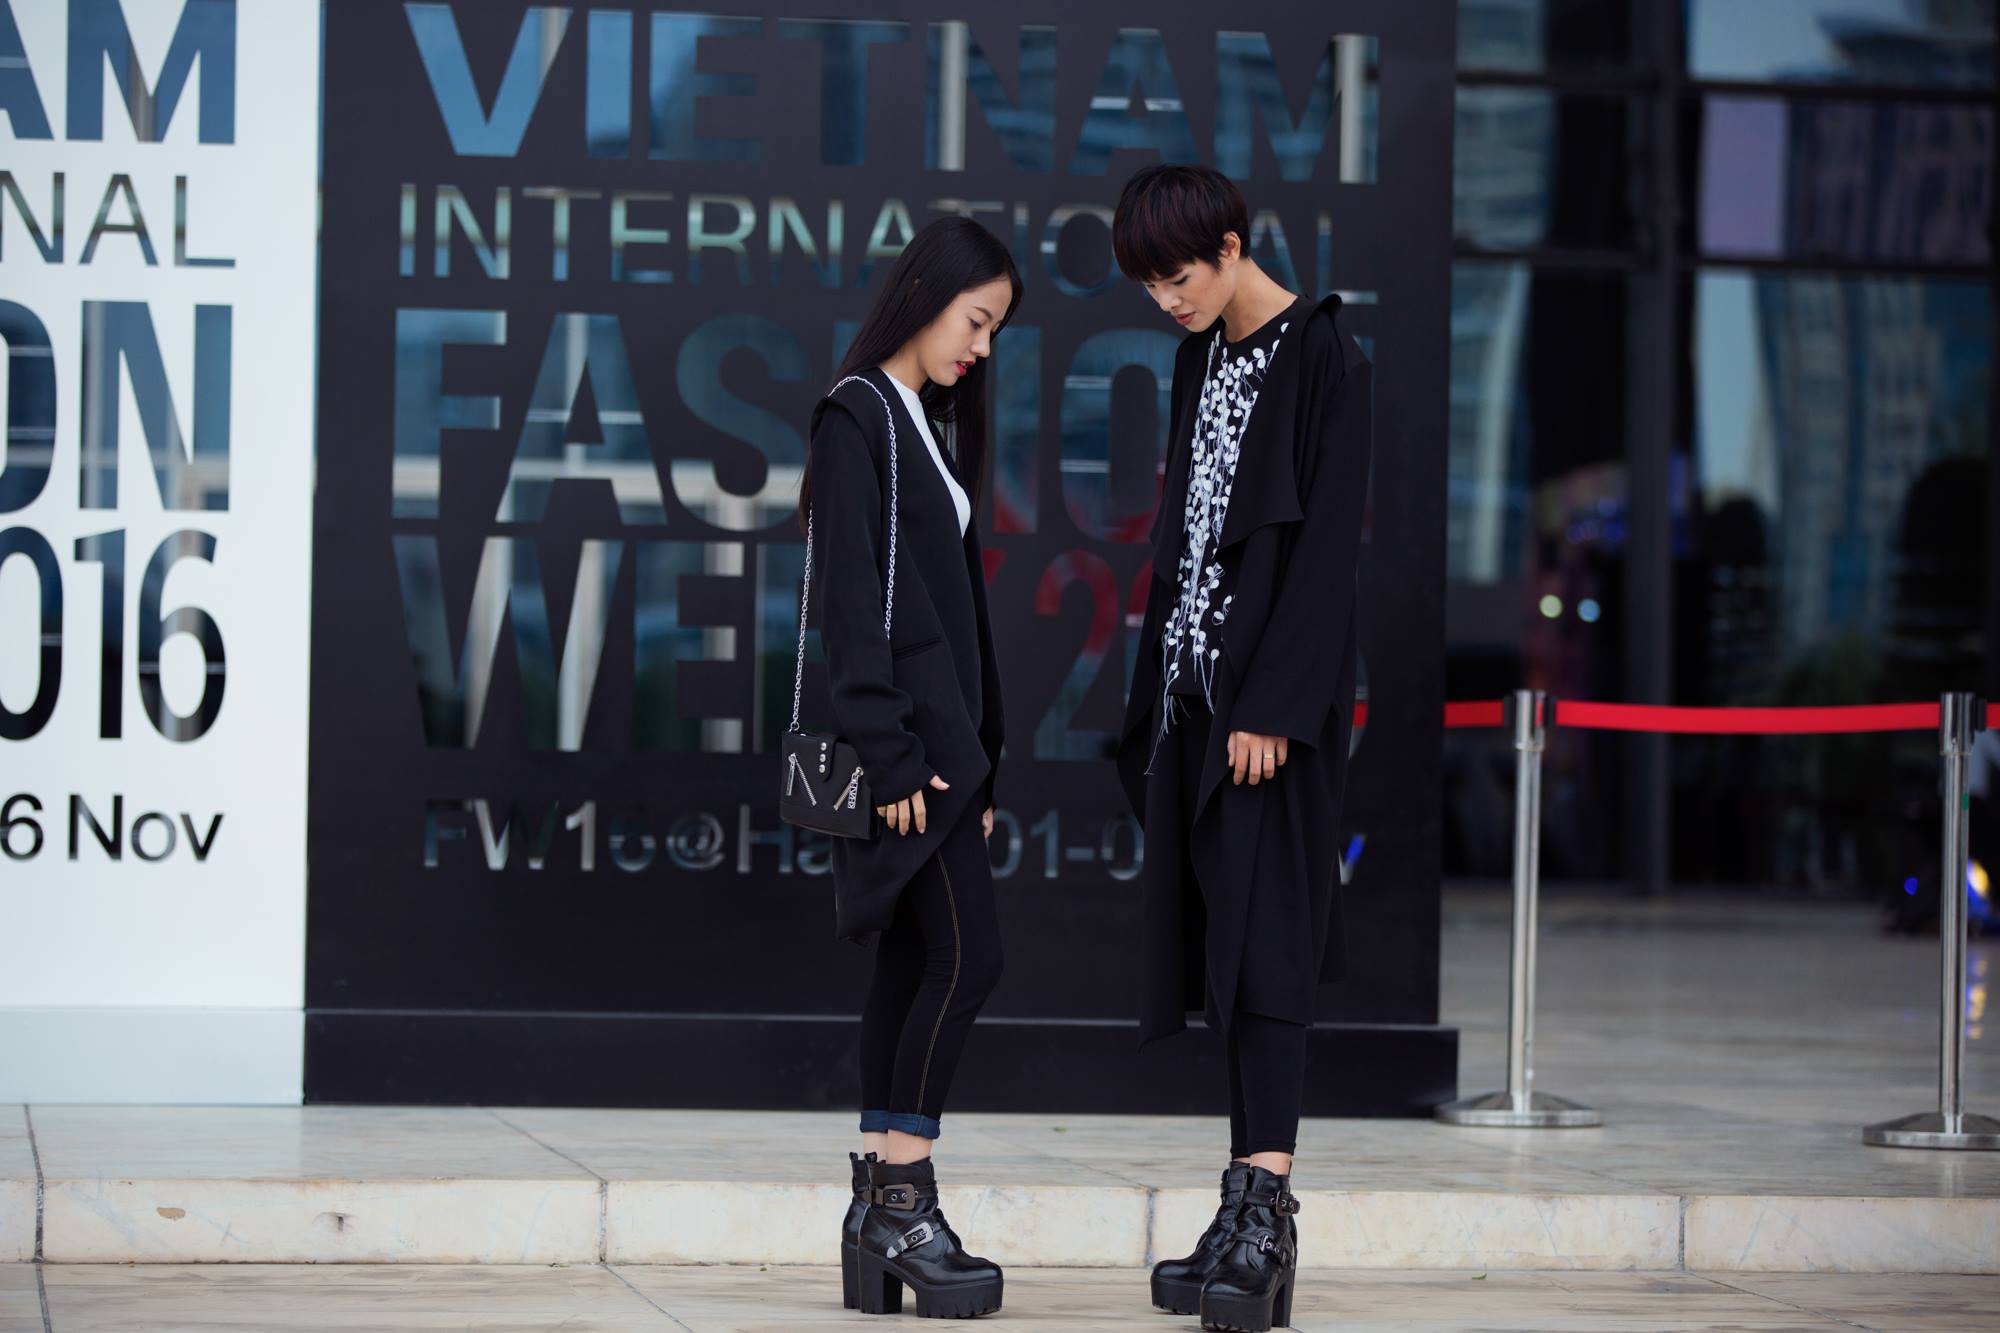 Màu đen có lẽ là màu ưa thích của rất nhiều tín đồ thời trang thủ đô và các nghệ sĩ, khách mời tham dự khi đồng loạt từ ngày đầu đến ngày cuối Vietnam International Fashion Week Thu Đông 2016, màu đen chiếm thế chủ đạo trong các bộ trang phục